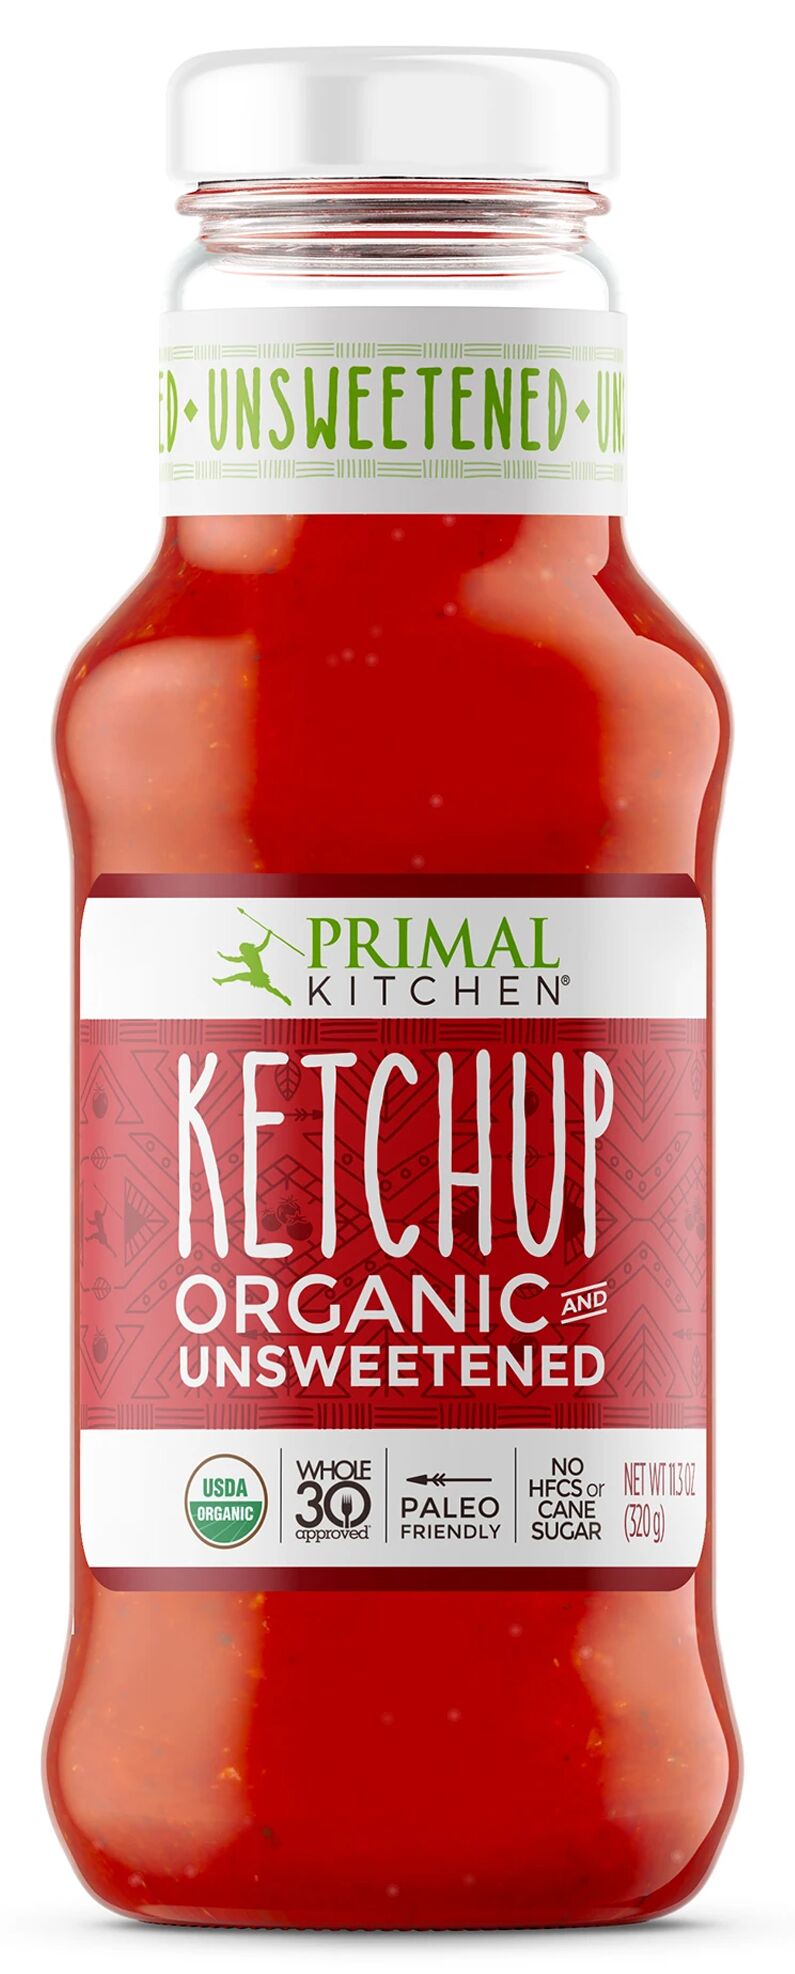 Primal Kitchen Organic Unsweetened Ketchup (3 x 11.3oz bottles)